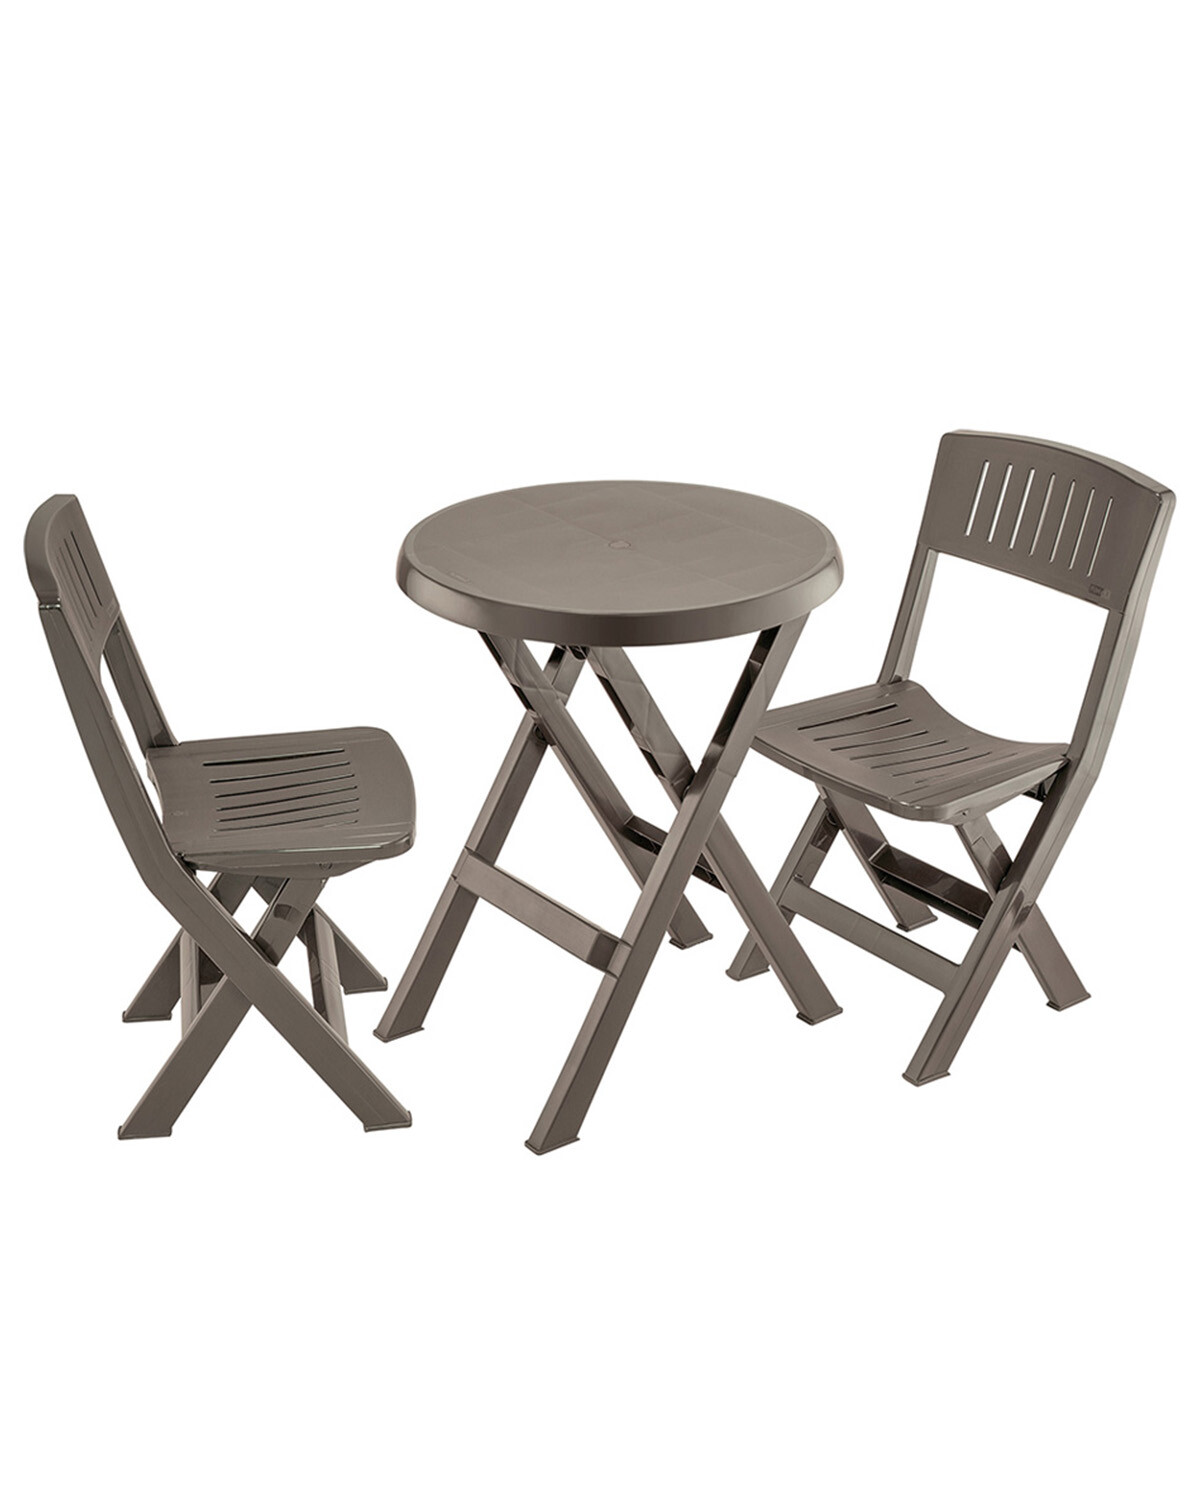 Tienda Online Silla plegable de madera de 4 piezas envío gratis. Comer silla  Ocio silla, Aliexpress móvil